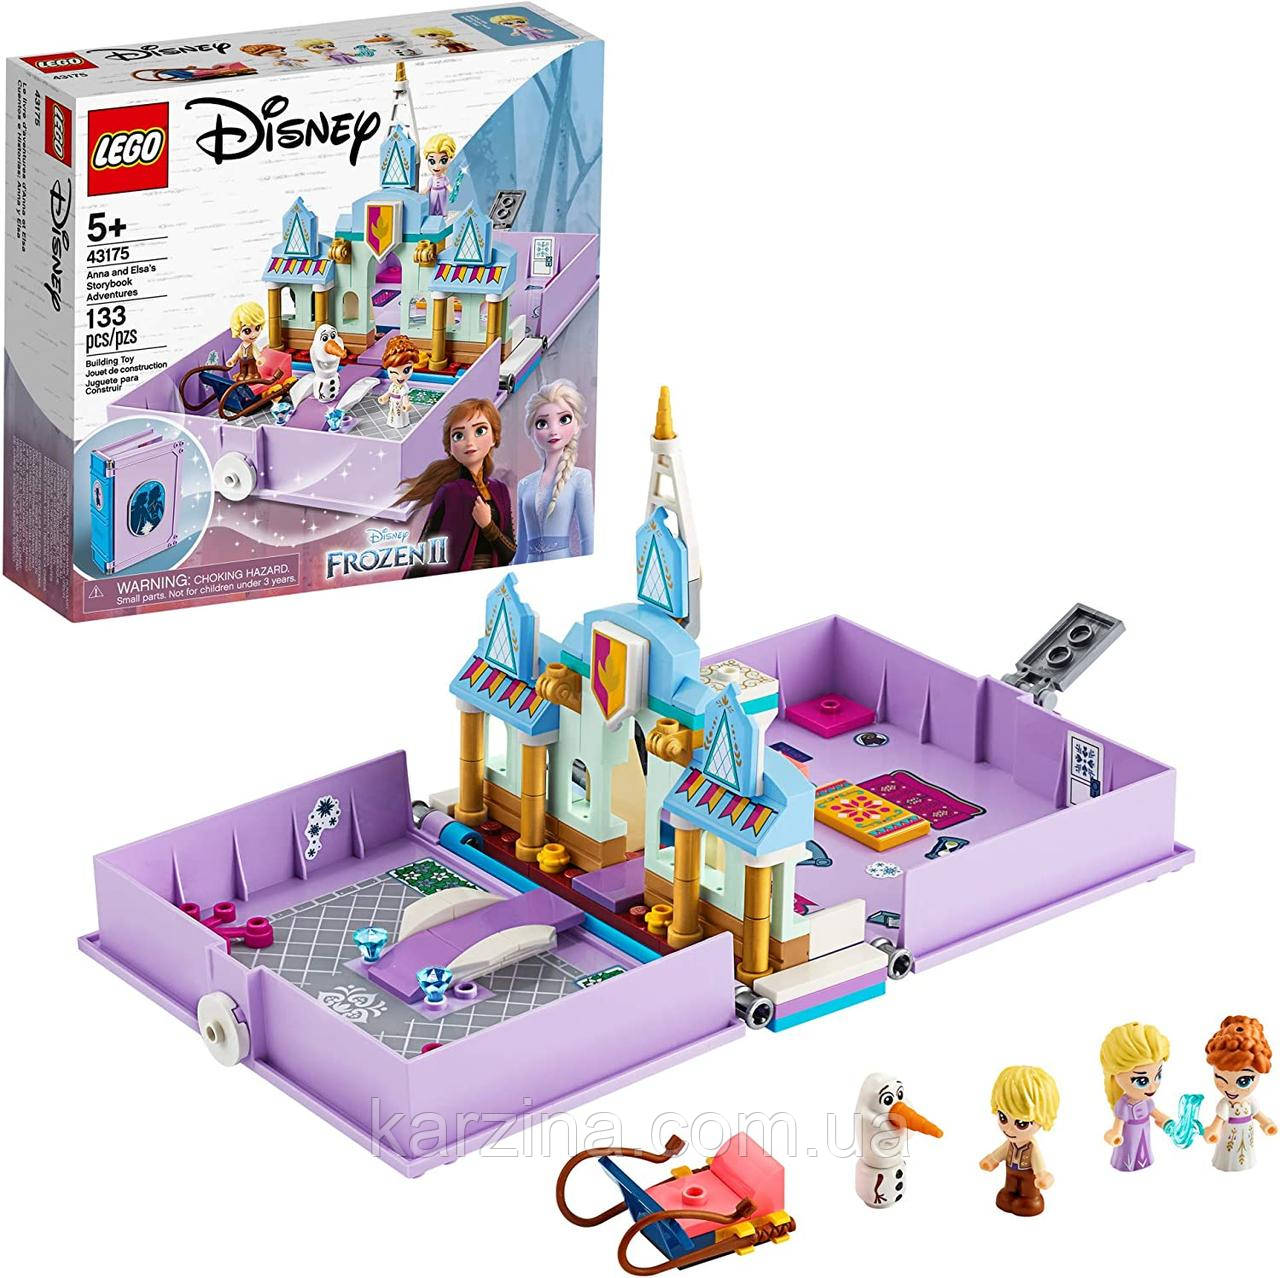 Конструктор лего Анна й Ельза LEGO Disney Anna and Elsa Frozen 2 43175 (133 Pieces)